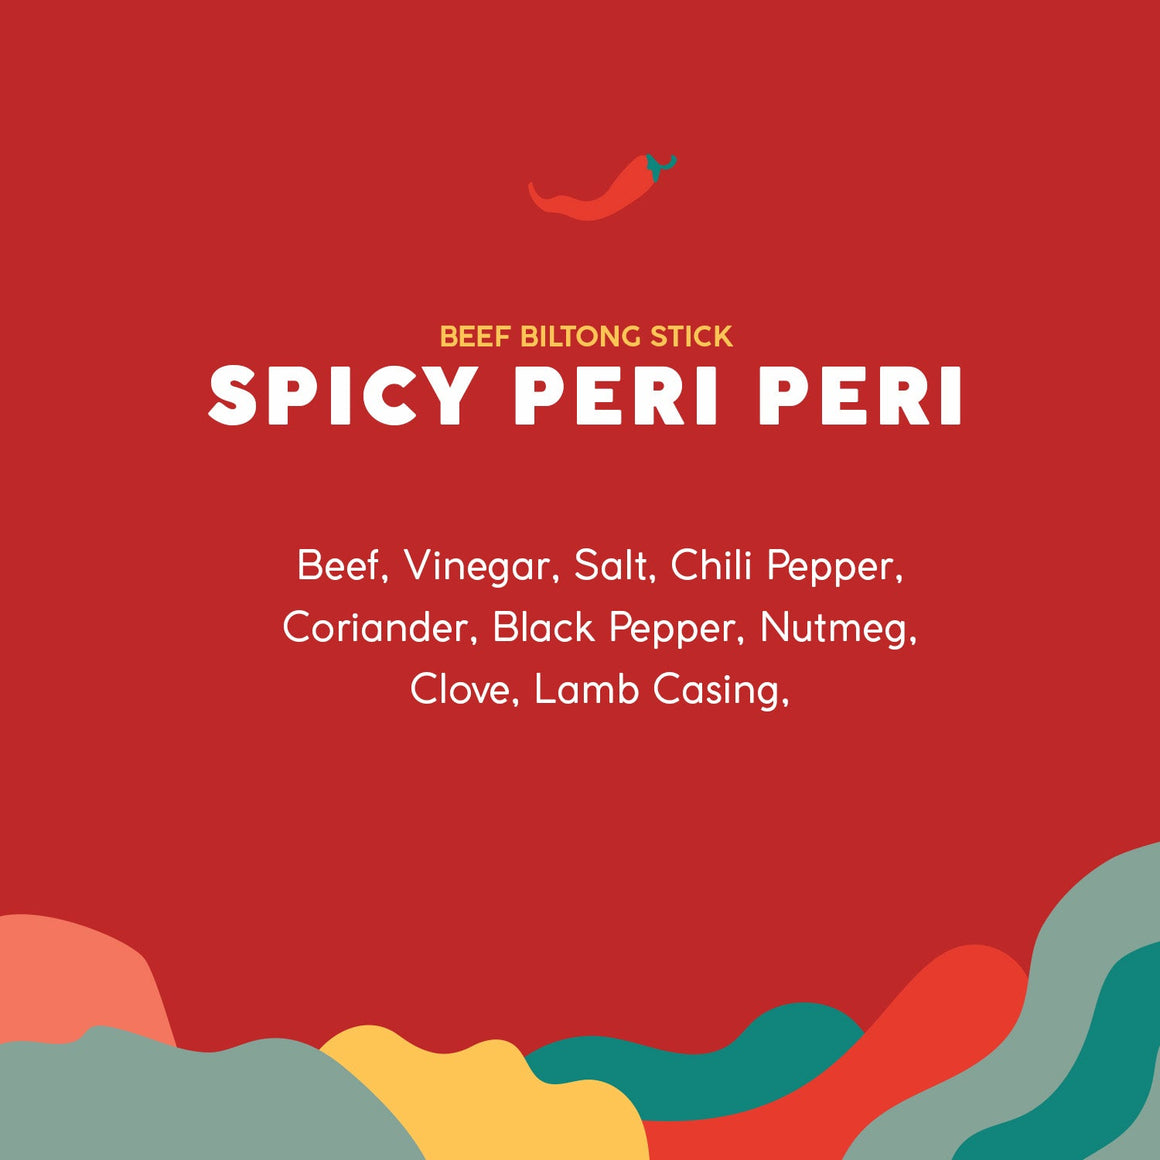 Spicy Peri Peri Biltong Stick 3 Pack - CLEARANCE